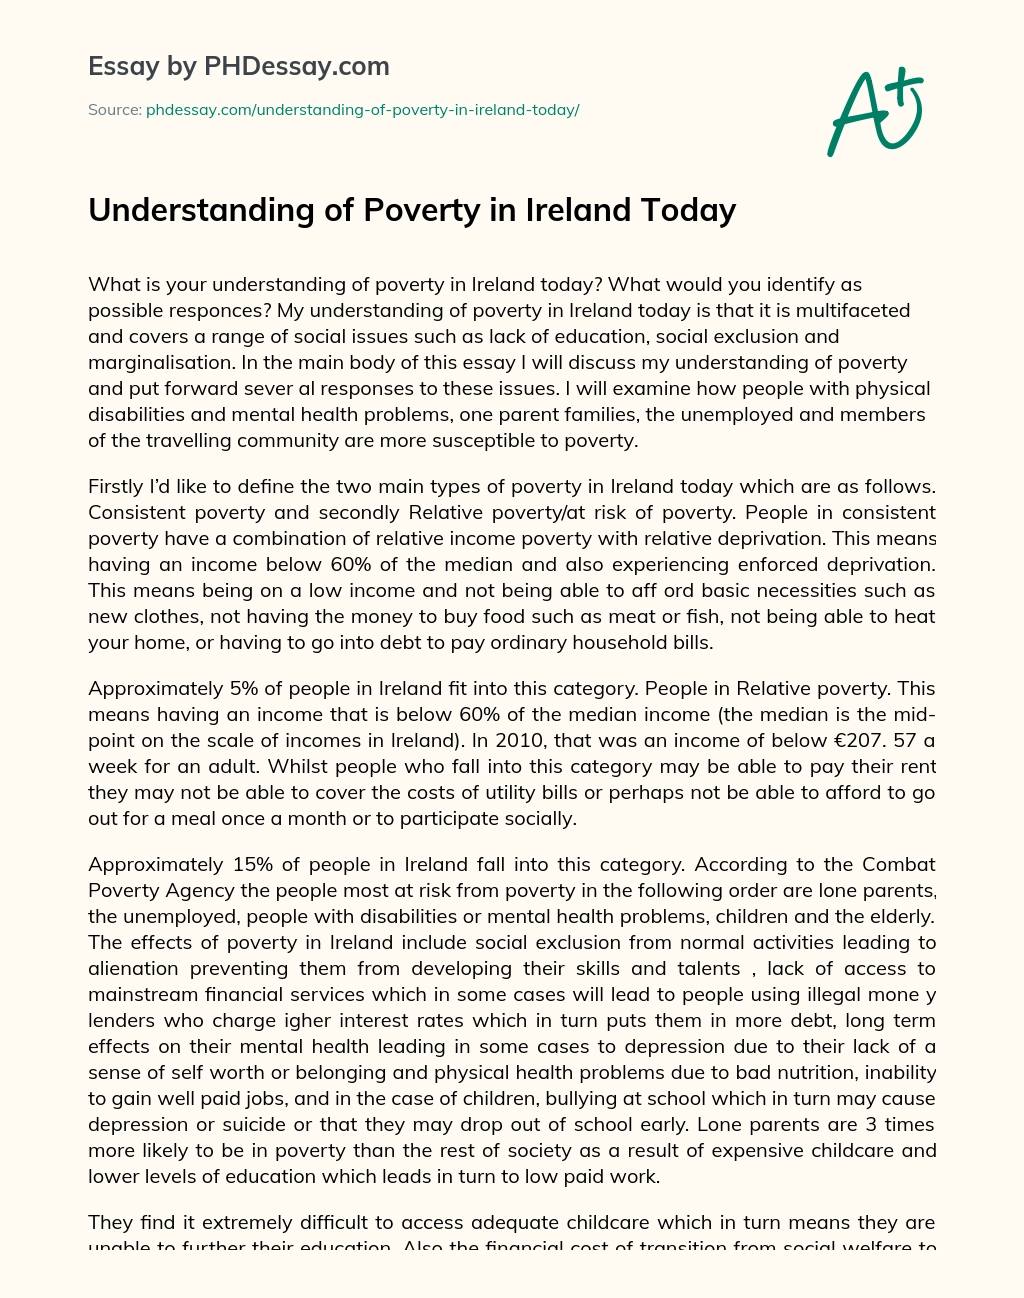 Understanding of Poverty in Ireland Today essay